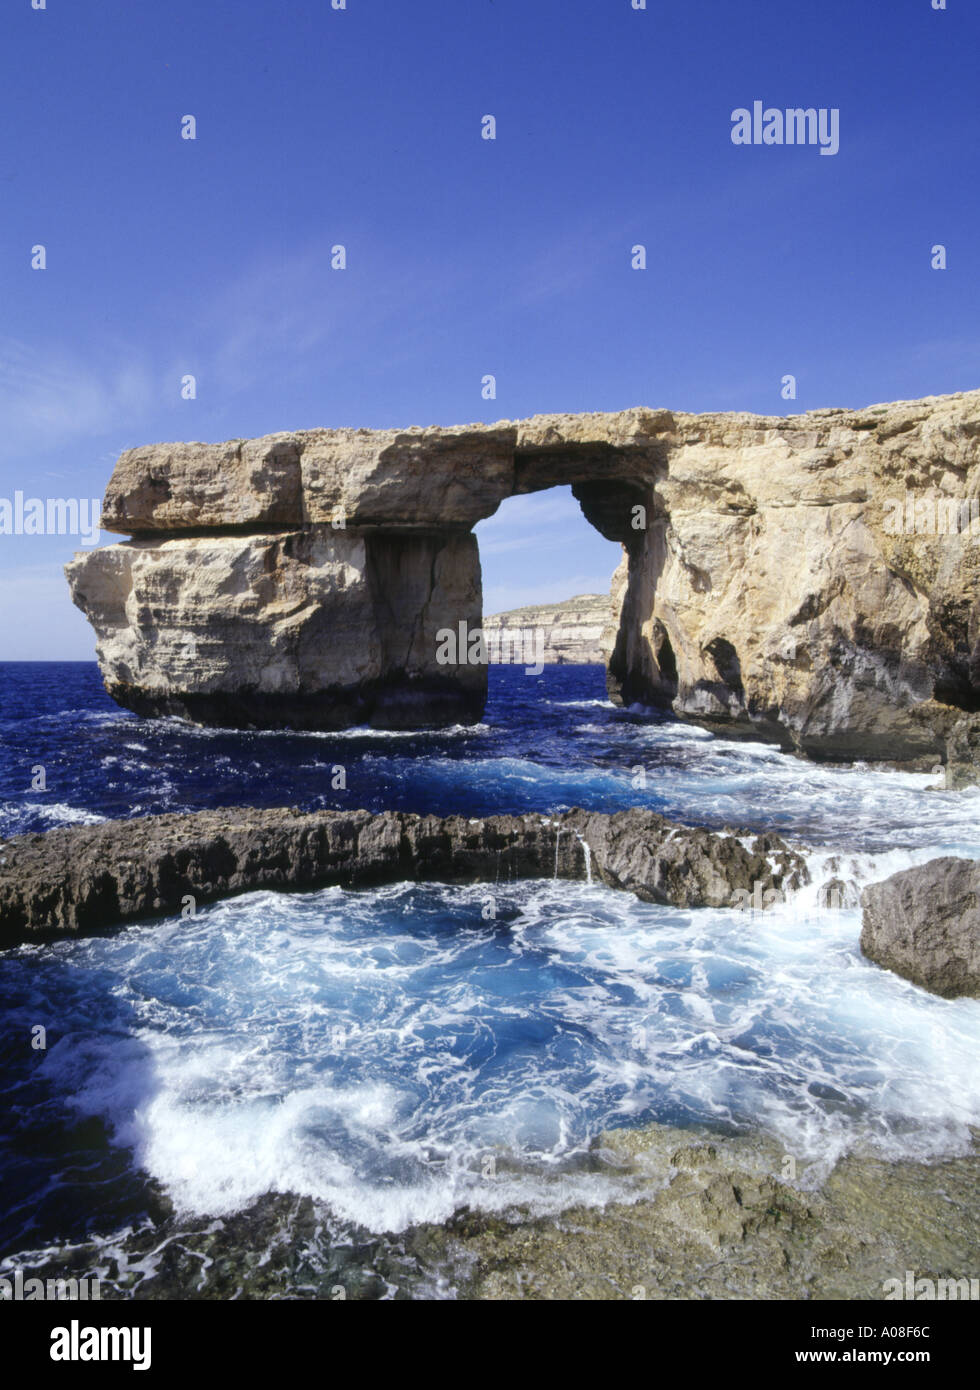 dh Azure Window DWEJRA POINT GOZO Arche naturelle île d'arches de mer malte ciel bleu formations Banque D'Images